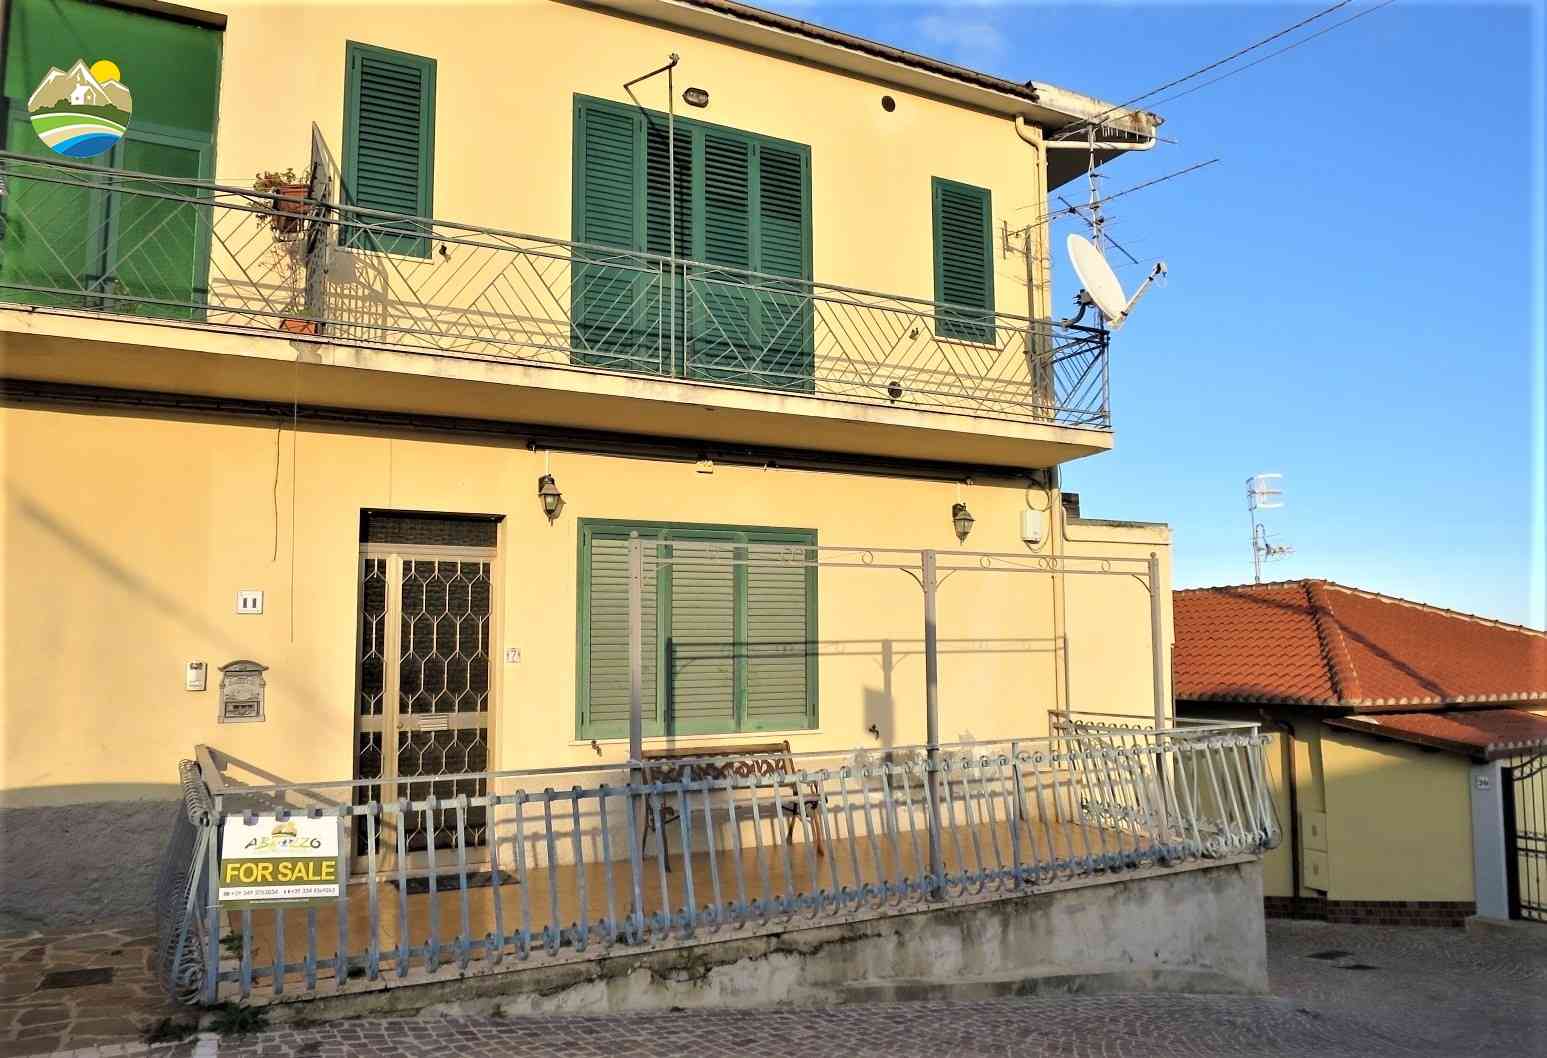 Townhouse Townhouse for sale Picciano (PE), Casa Pesco - Picciano - EUR 55.544 530